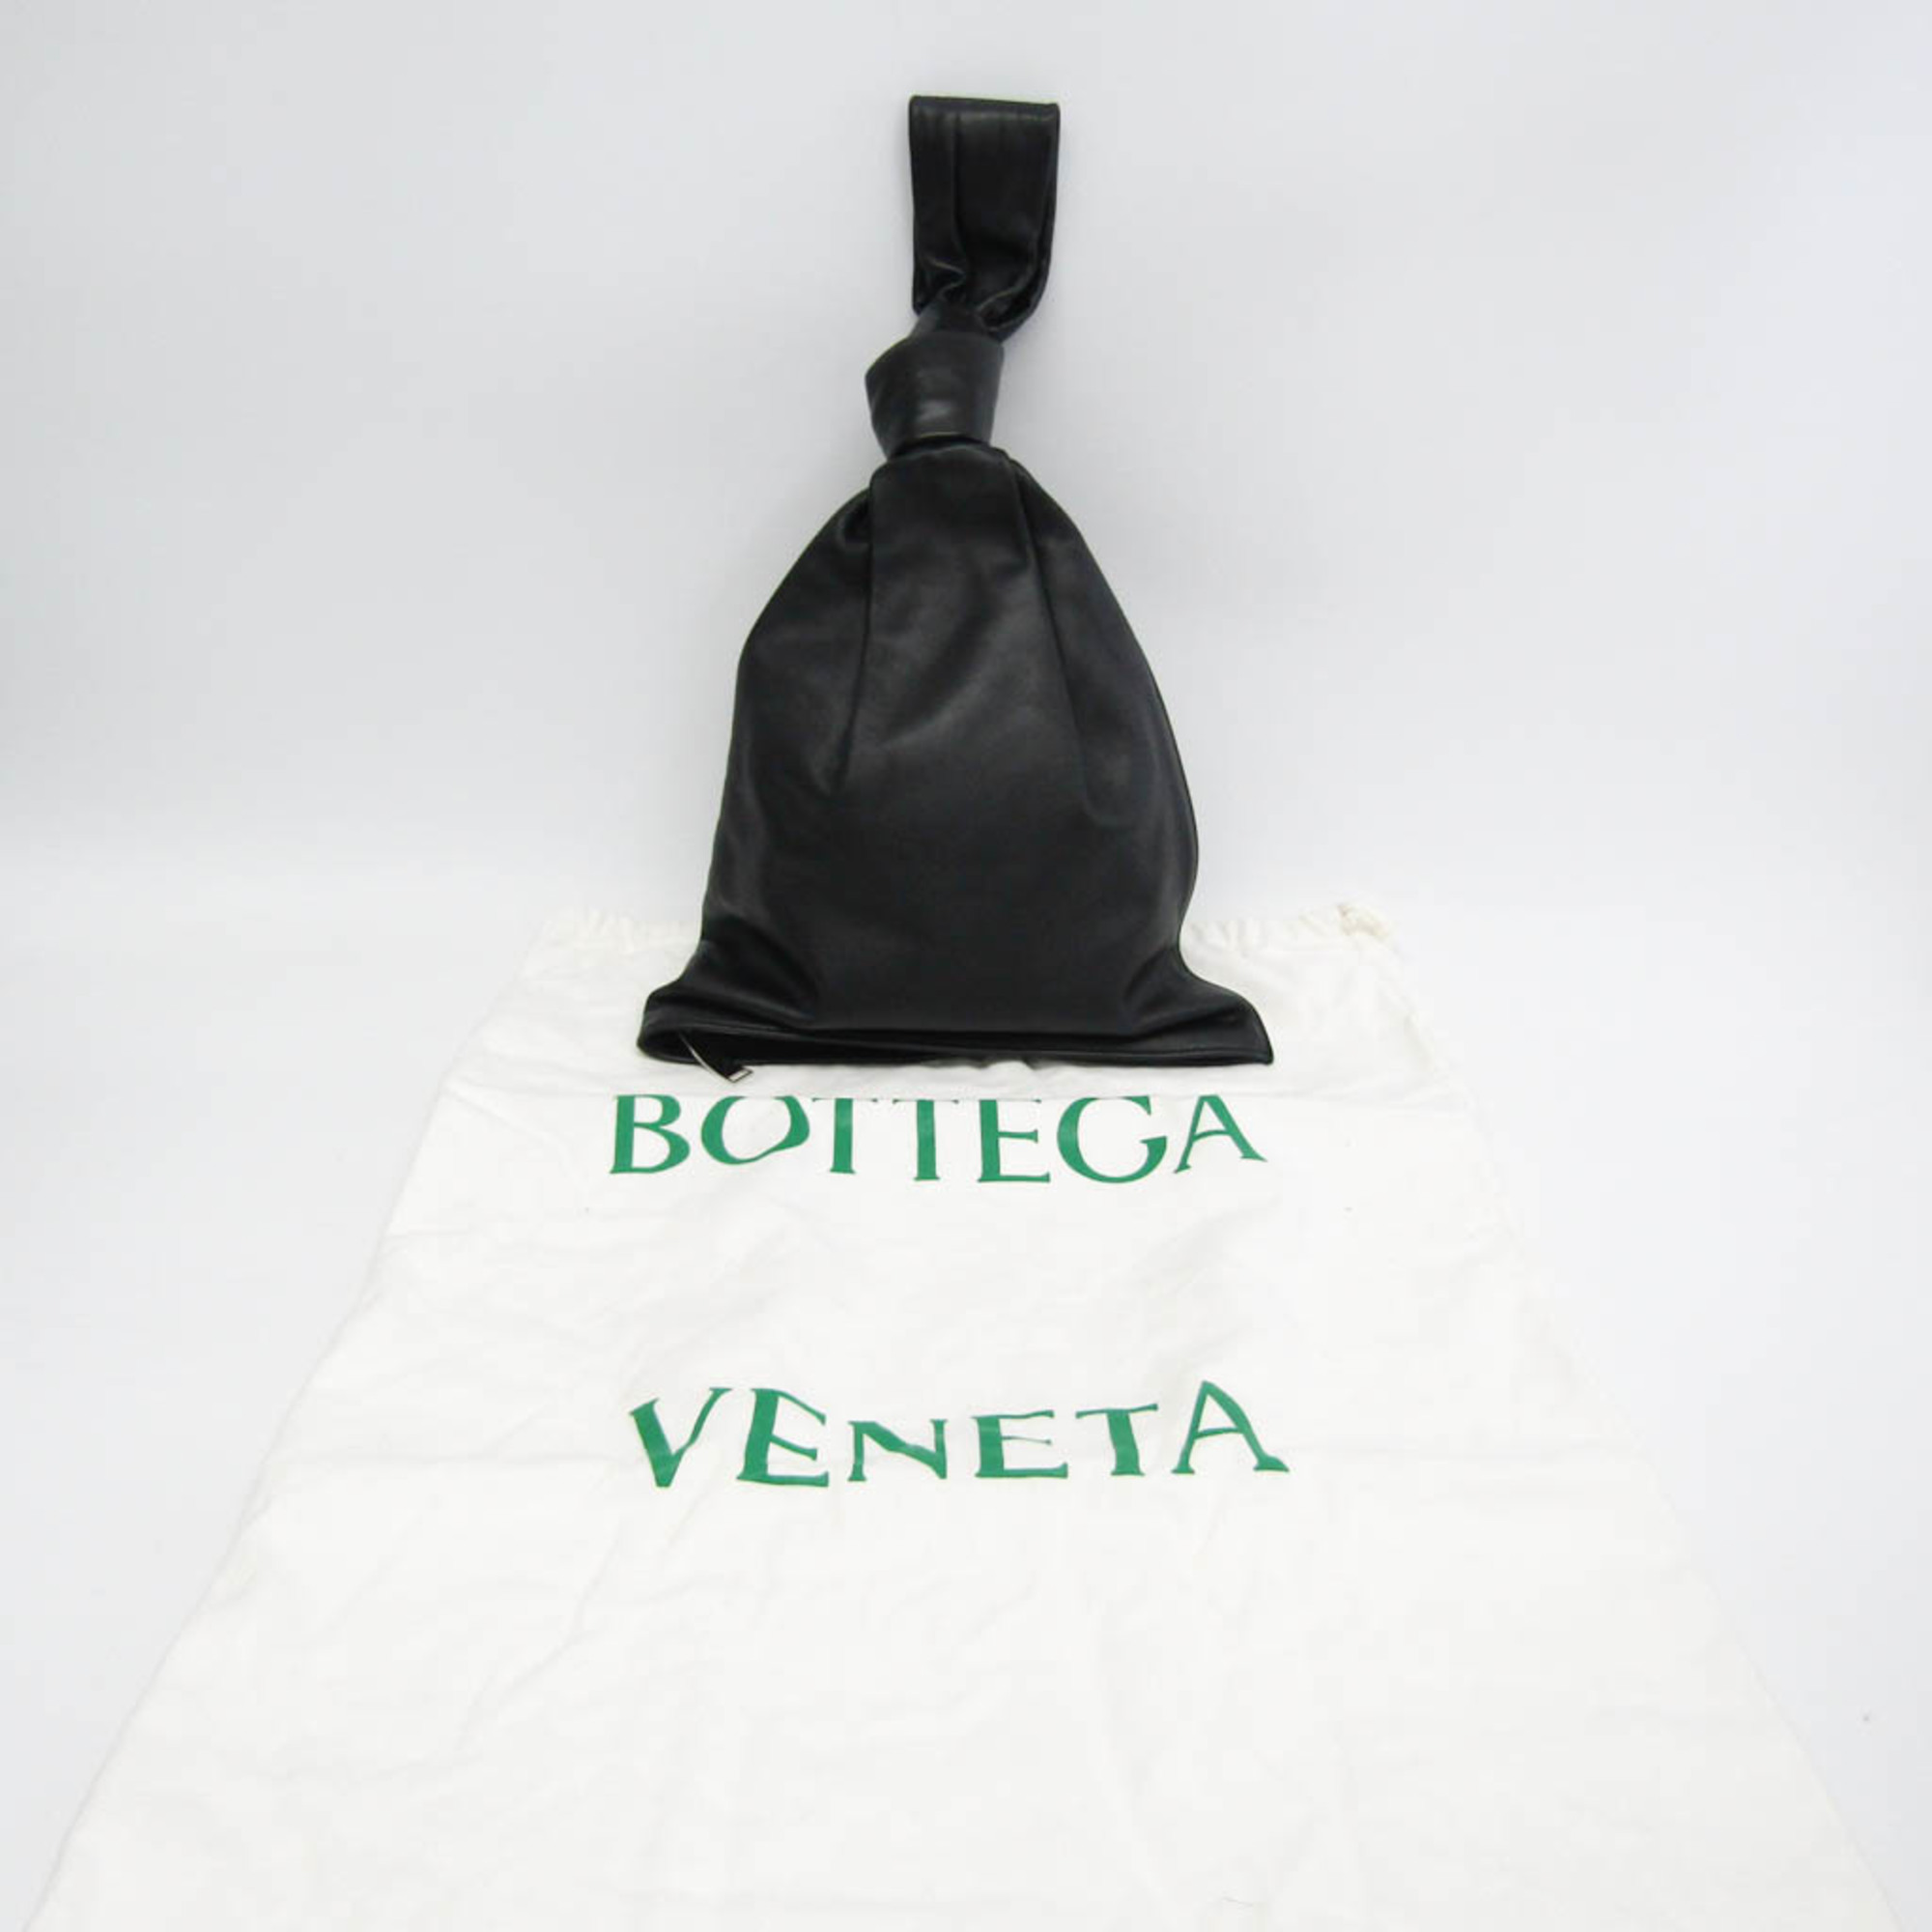 ボッテガ・ヴェネタ(Bottega Veneta) TWIST 607964 レディース レザー ハンドバッグ ブラック